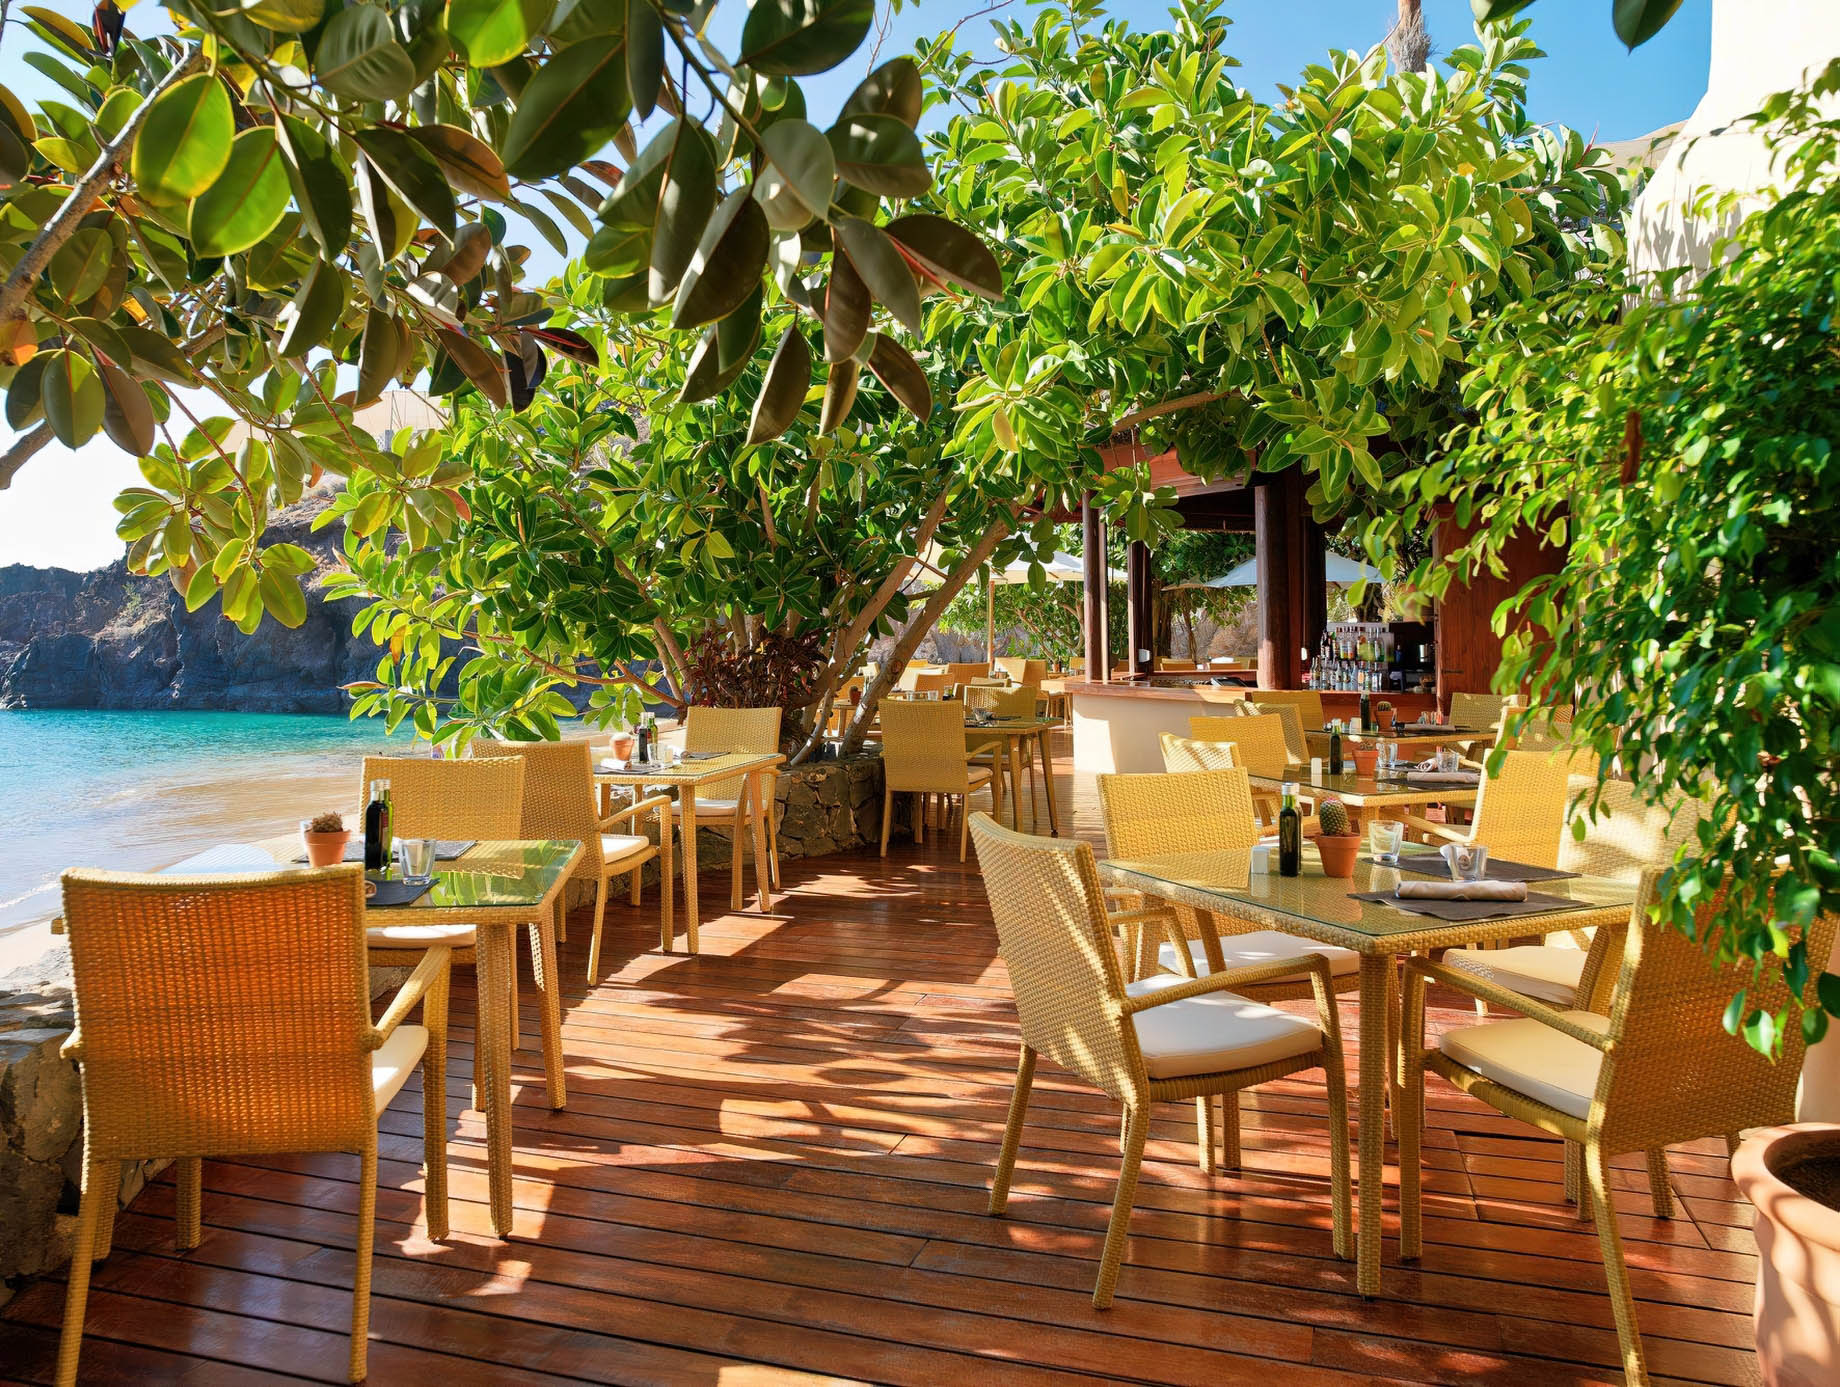 The Ritz-Carlton, Abama Resort - Santa Cruz de Tenerife, Spain - Beach Club Restaurant Deck